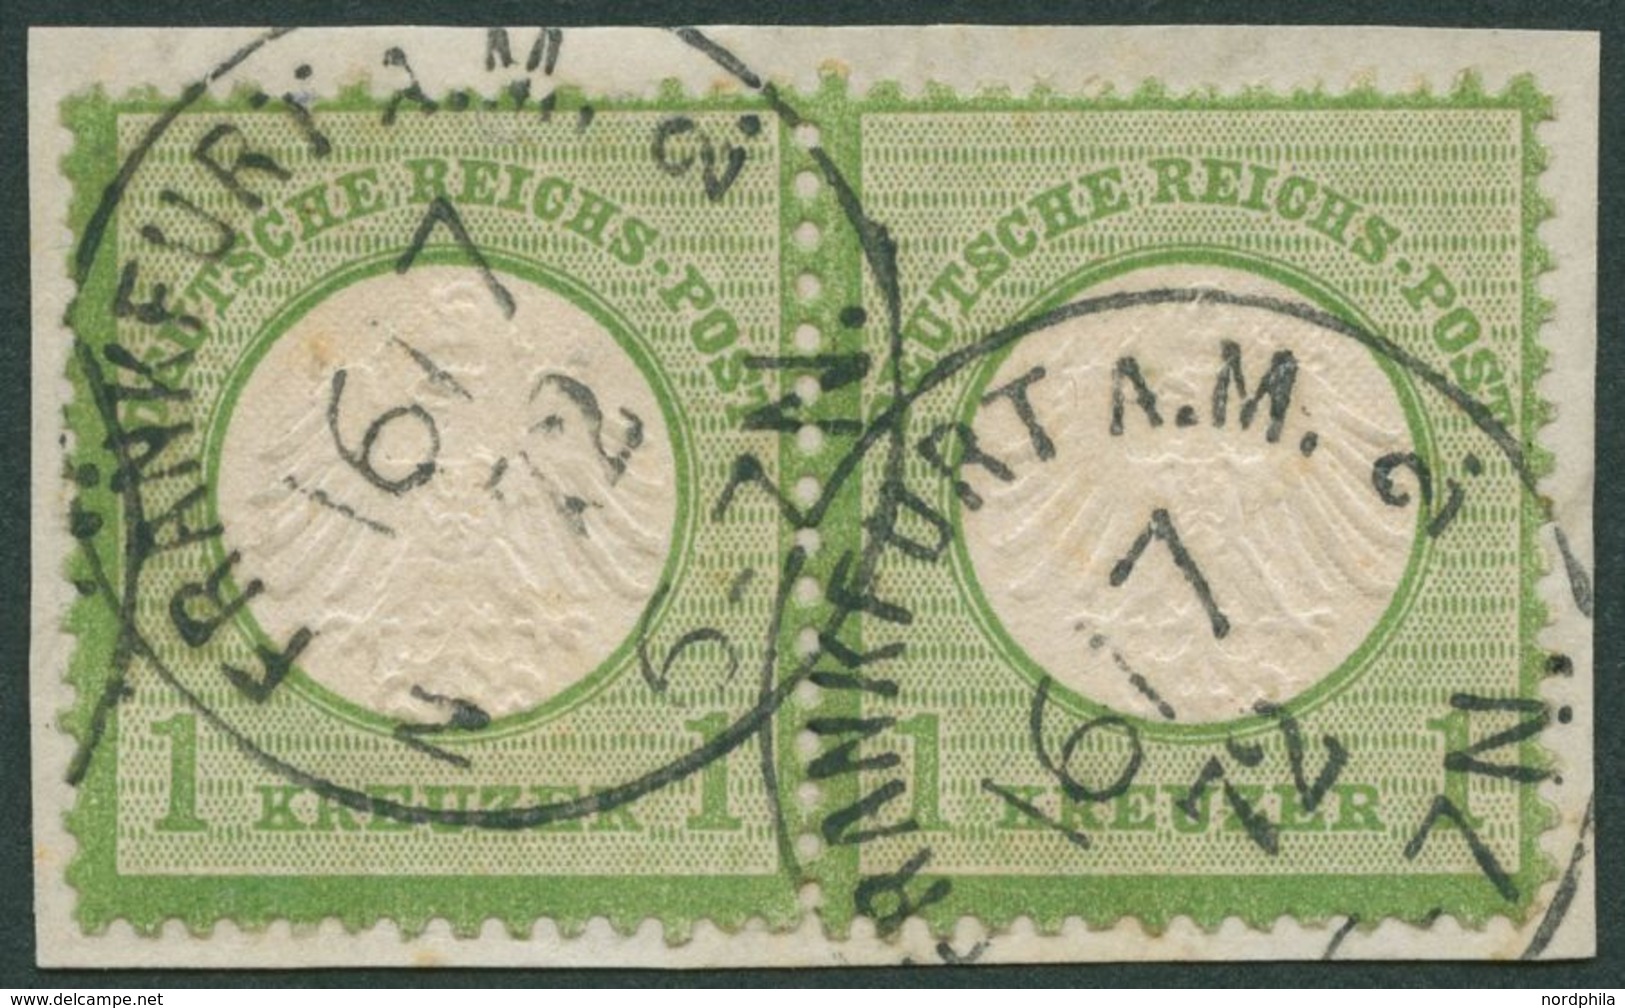 Dt. Reich 7 Paar BrfStk, 1872, 1 Kr. Gelblichgrün Im Waagerechten Paar, K1 FRANKFURT A.M., Prachtbriefstück, Fotobefund  - Used Stamps